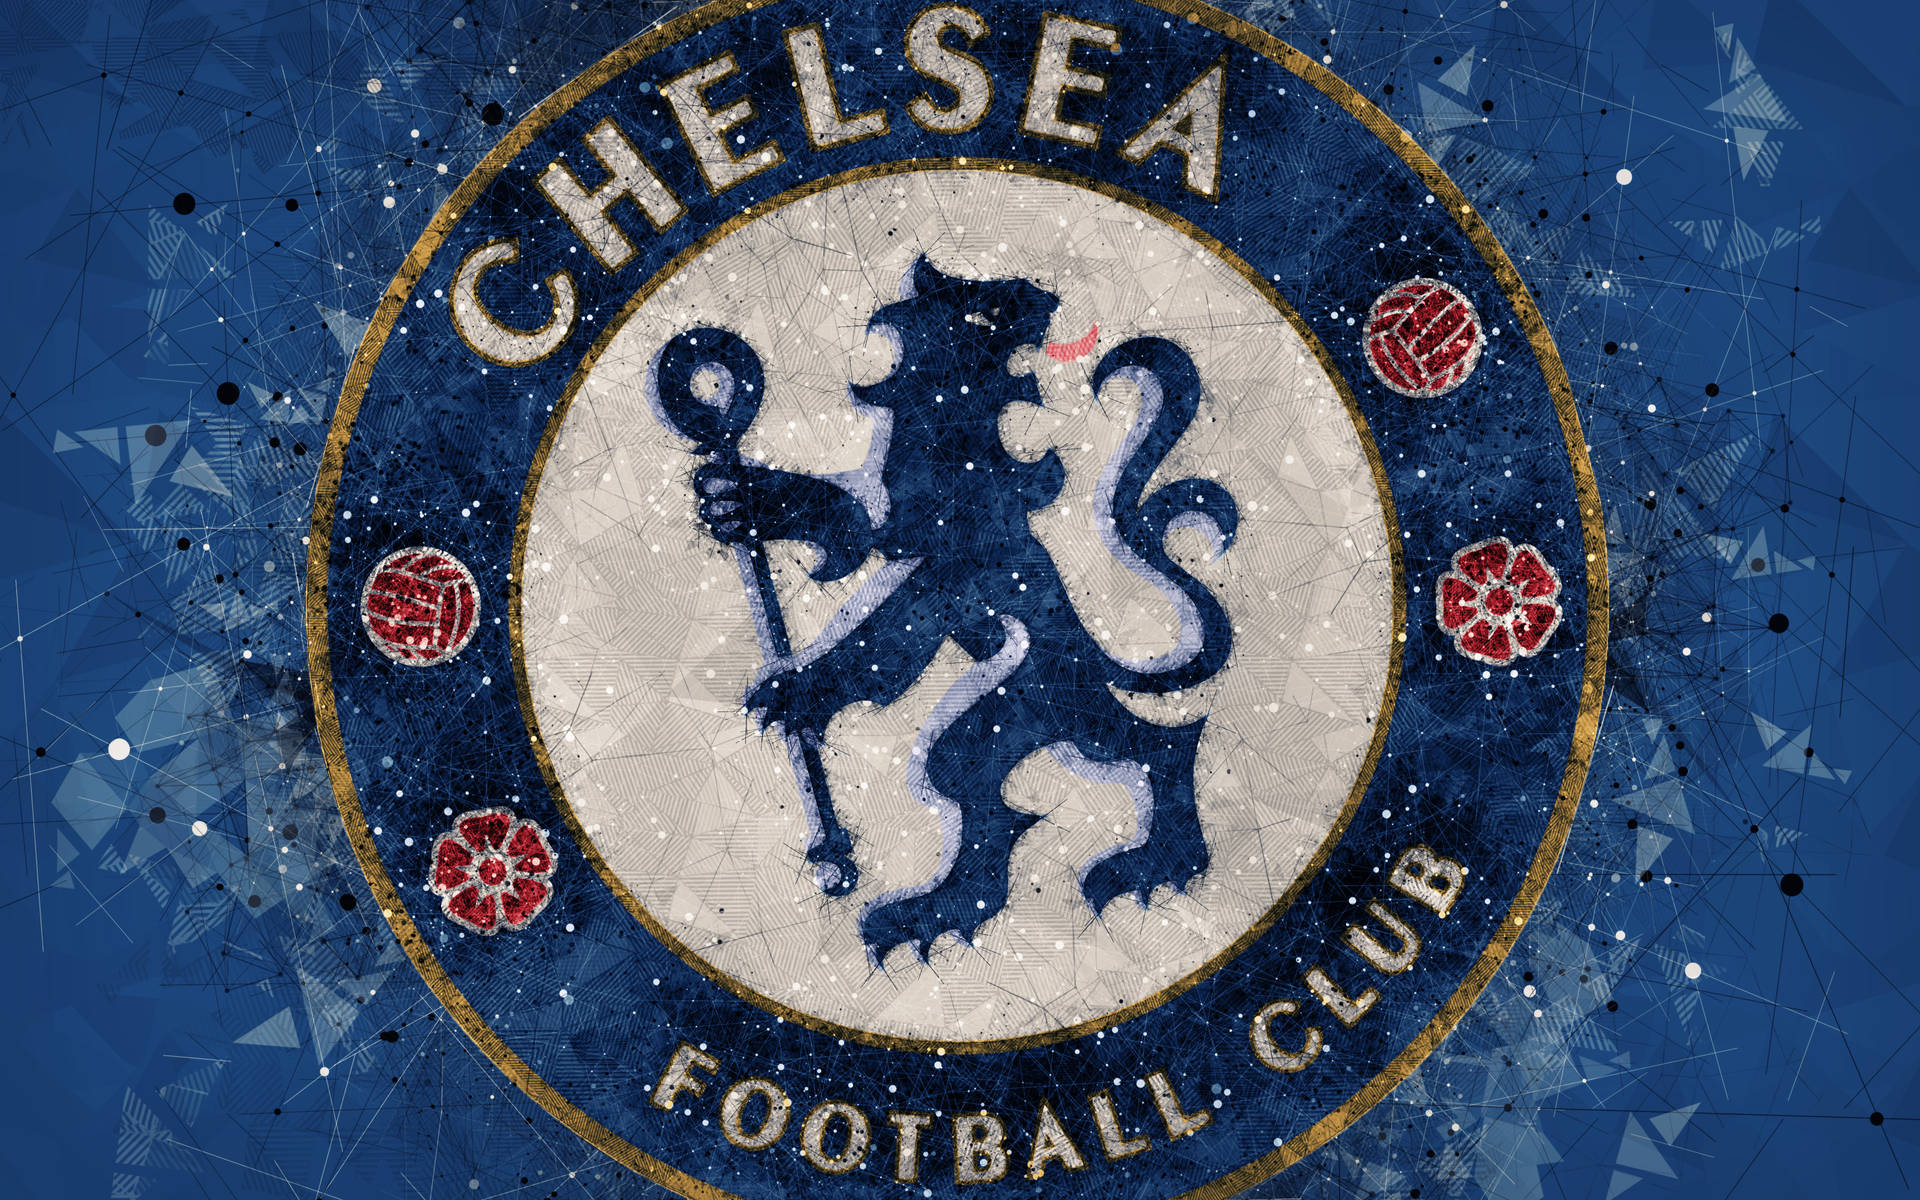 Stylized Chelsea Fc Crest Wallpaper